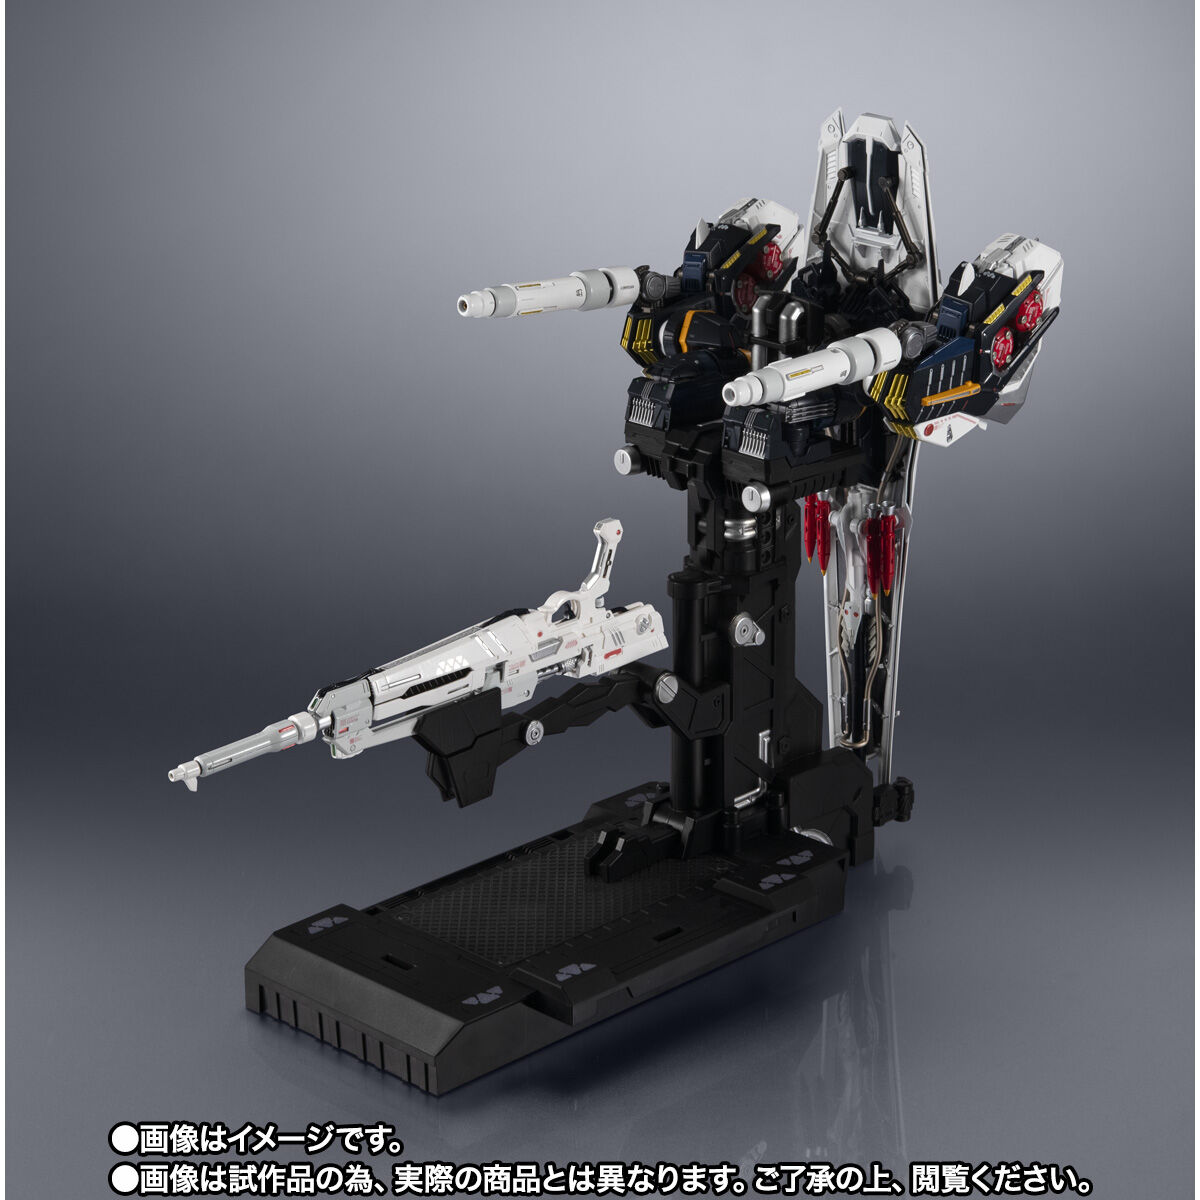 【限定販売】METAL STRUCTURE 解体匠機『RX-93 νガンダム専用 武装強化プラン』オプションパーツ-009